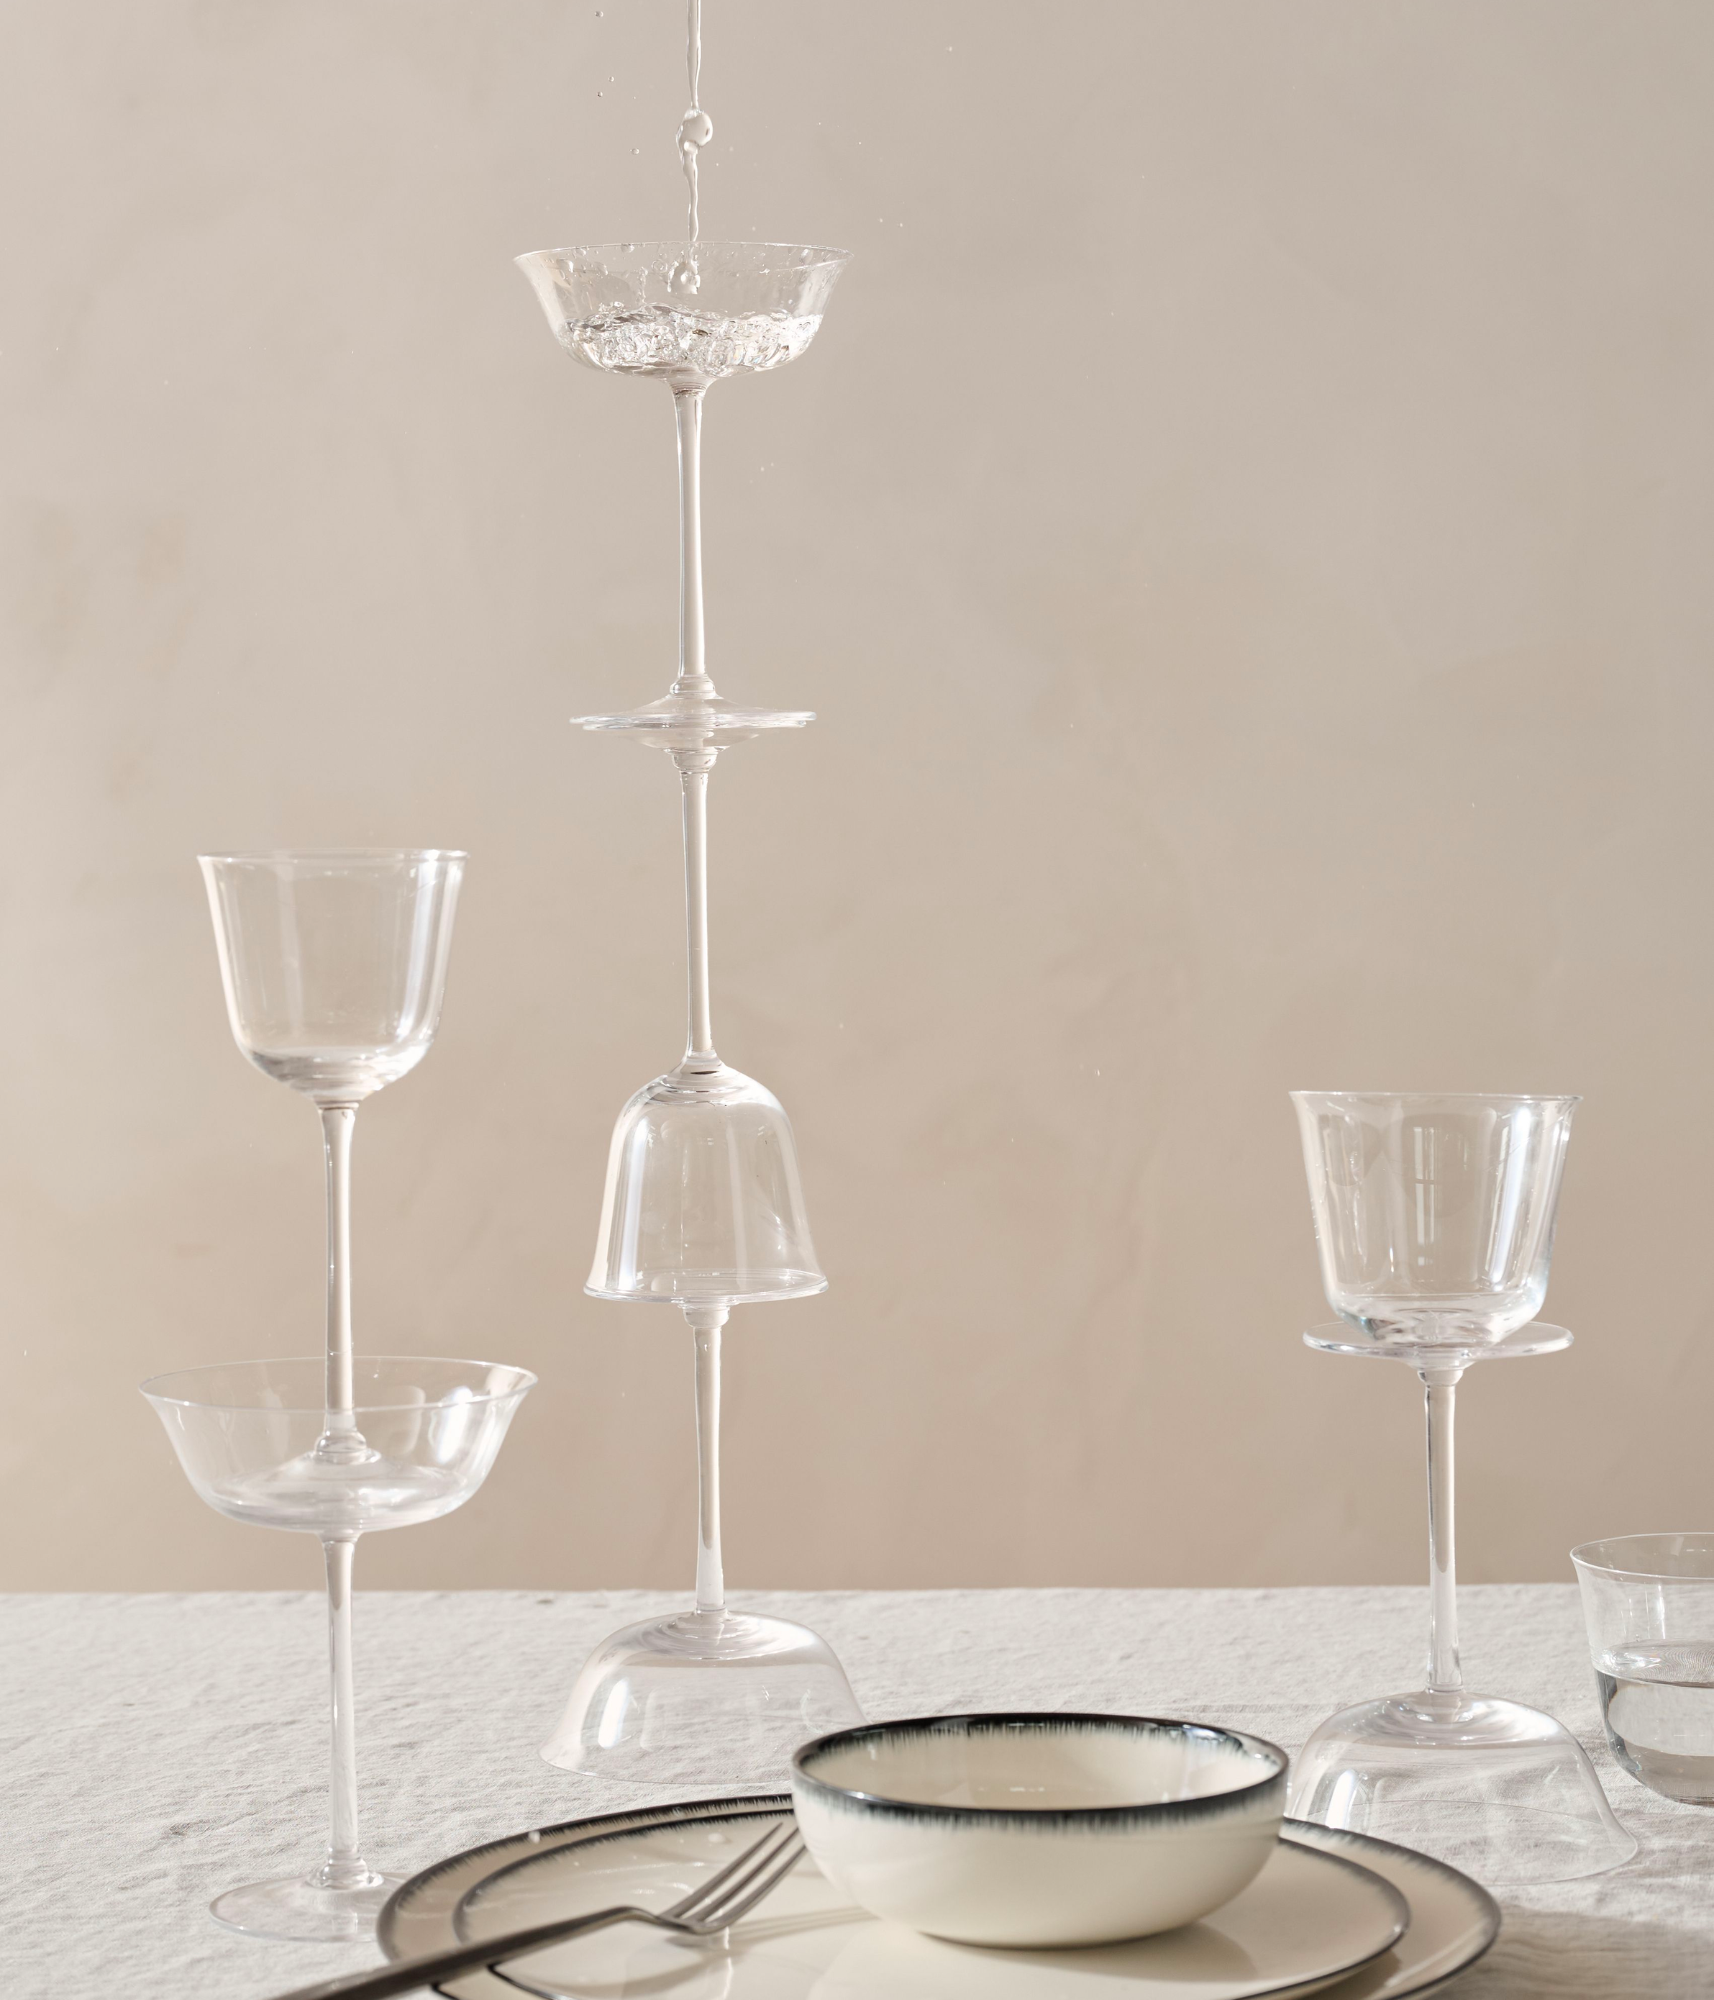 Monogrammed White Wine Crystal Glasses, set/4